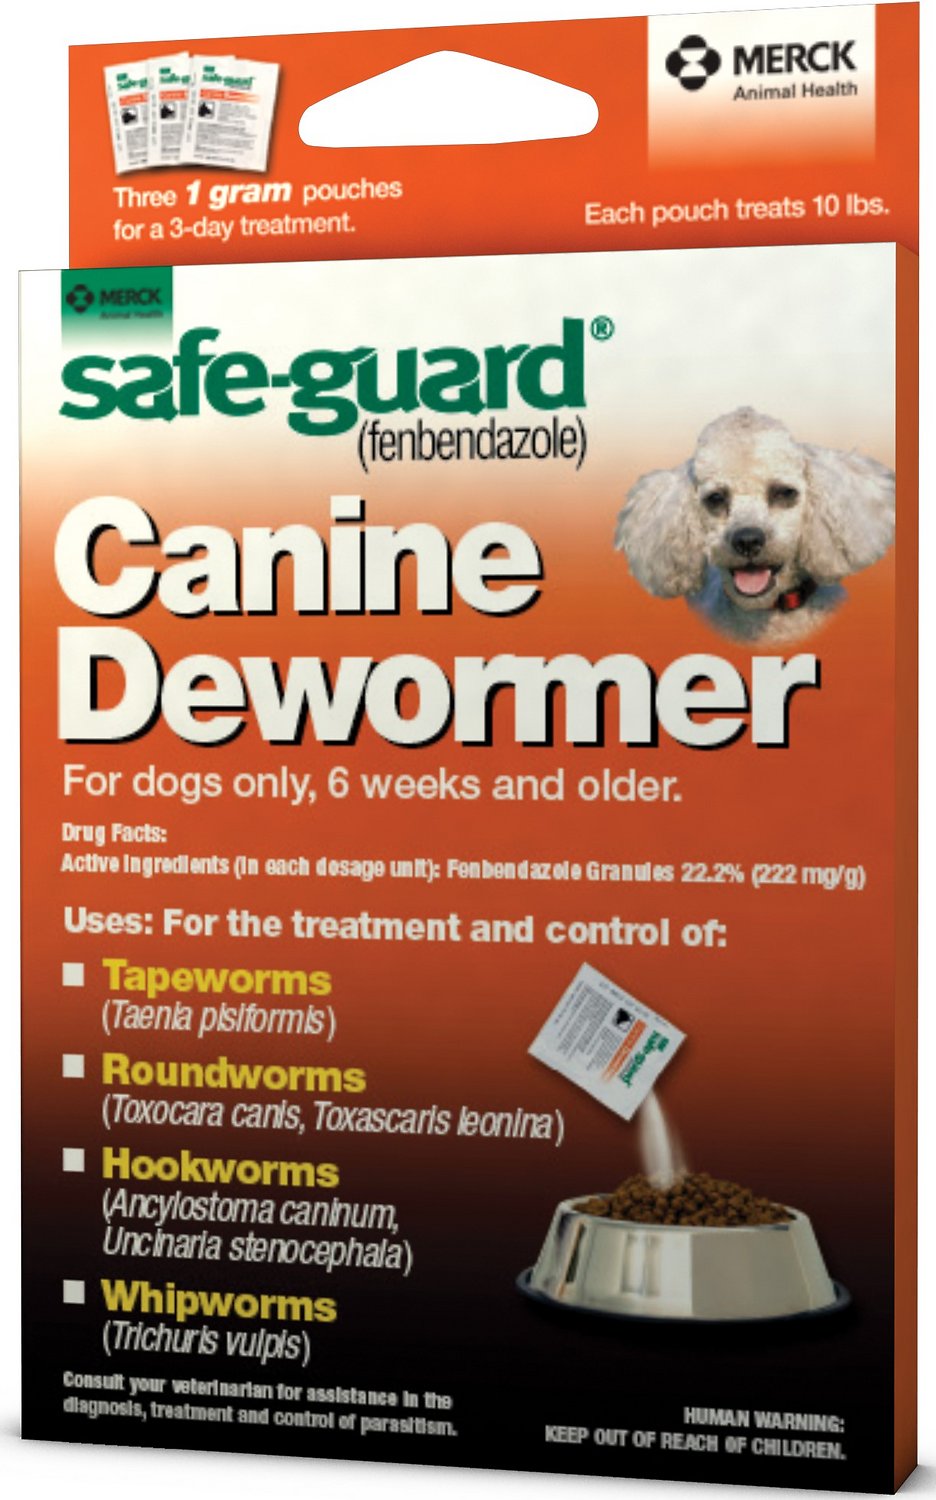 Safe-Guard Canine Dewormer (Fenbendazole) Dogs Only 6 Weeks & Older - 1 gram